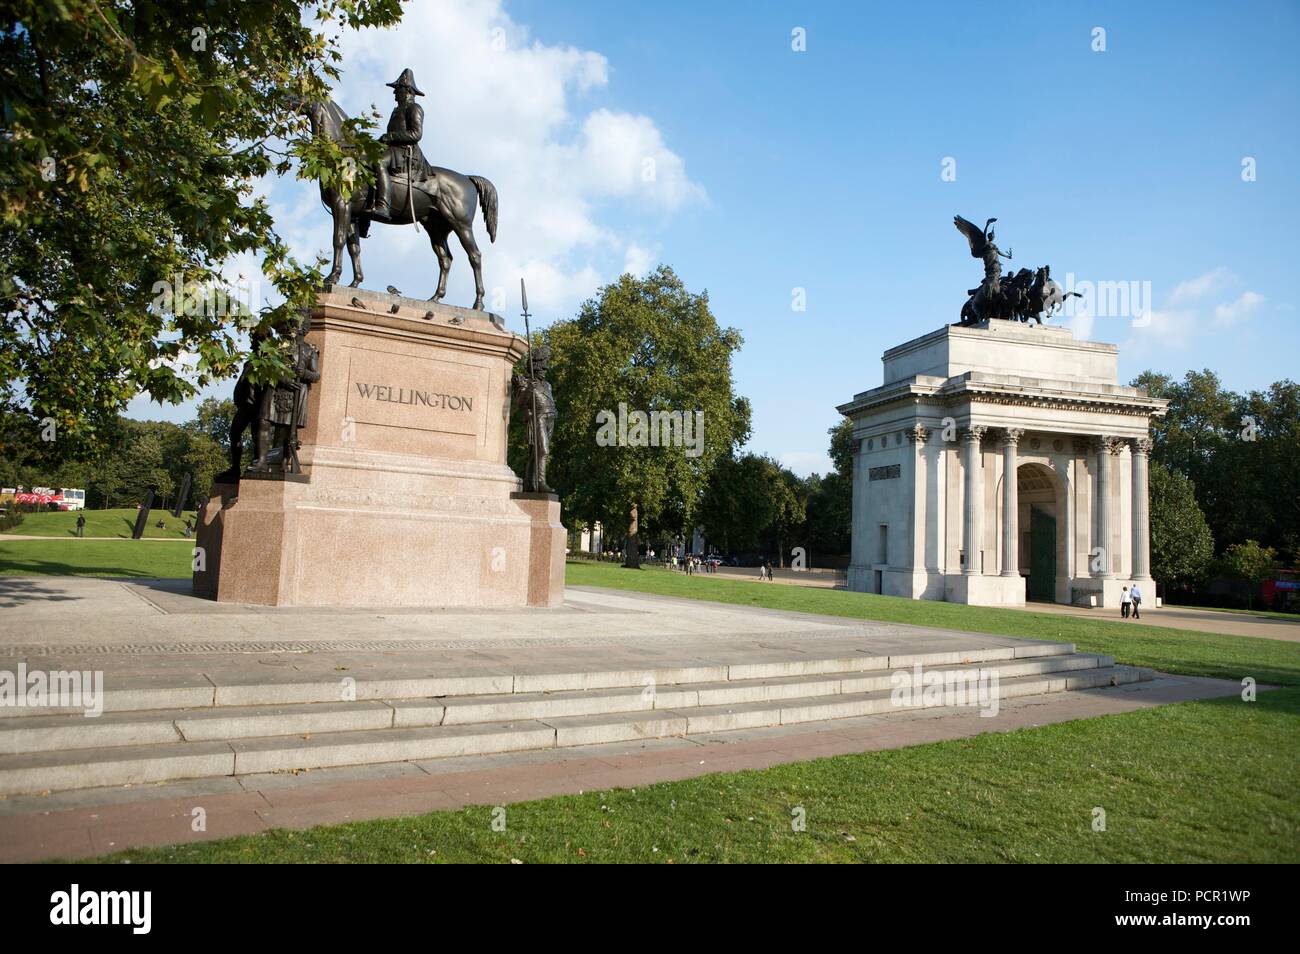 Statue du duc de Wellington et la Wellington Arch, London, c1980-c2017. Artiste : Angleterre historique commandé photographe. Banque D'Images